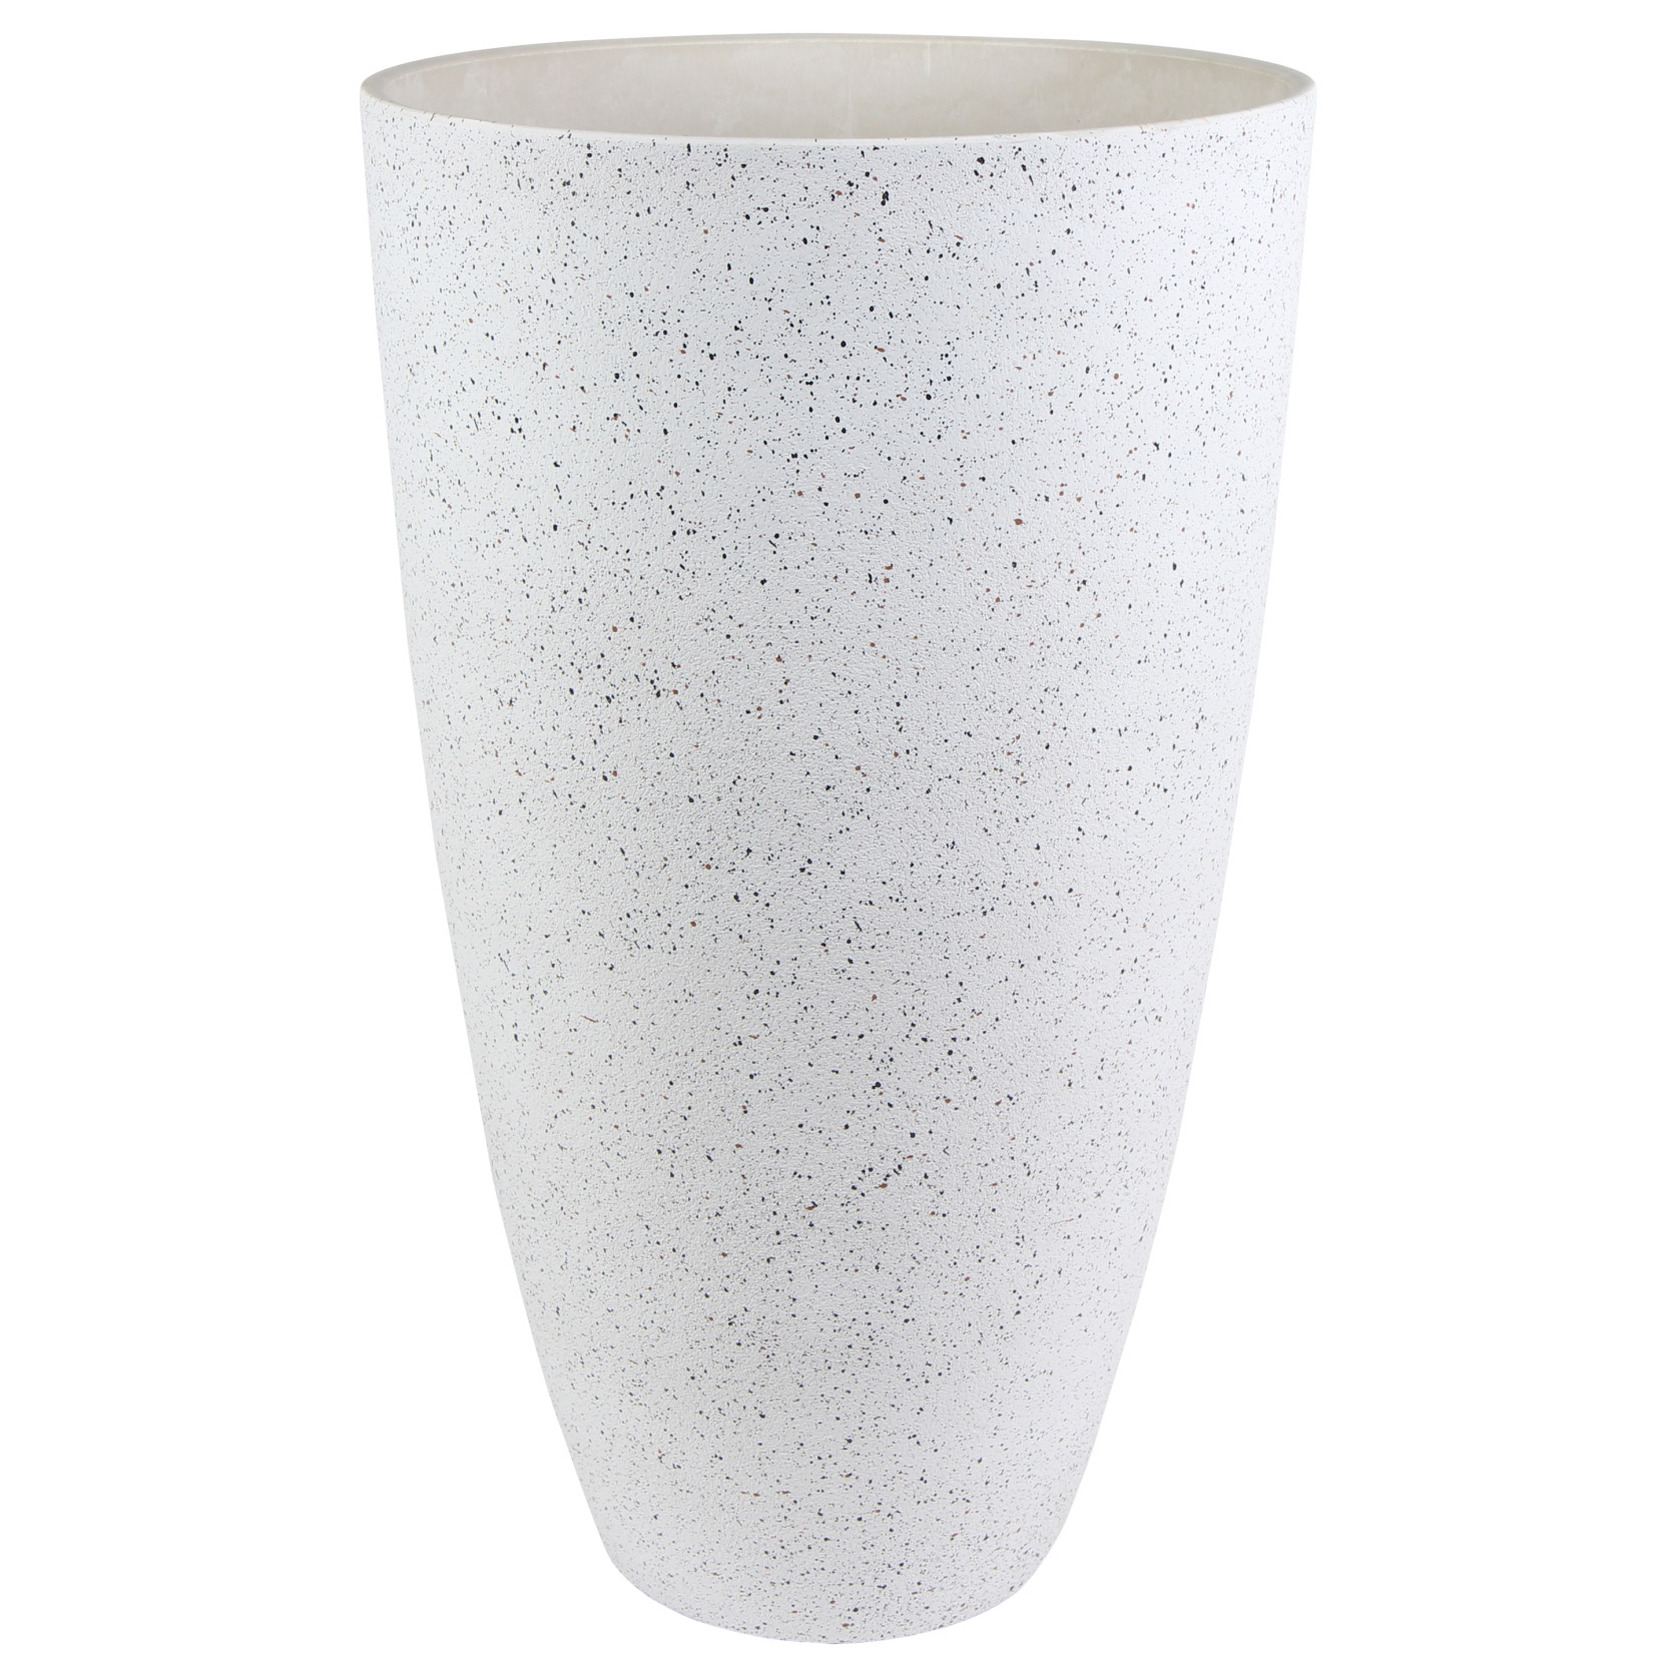 Bloempot-plantenpot vaas van gerecycled kunststof wit D29 en H50 cm